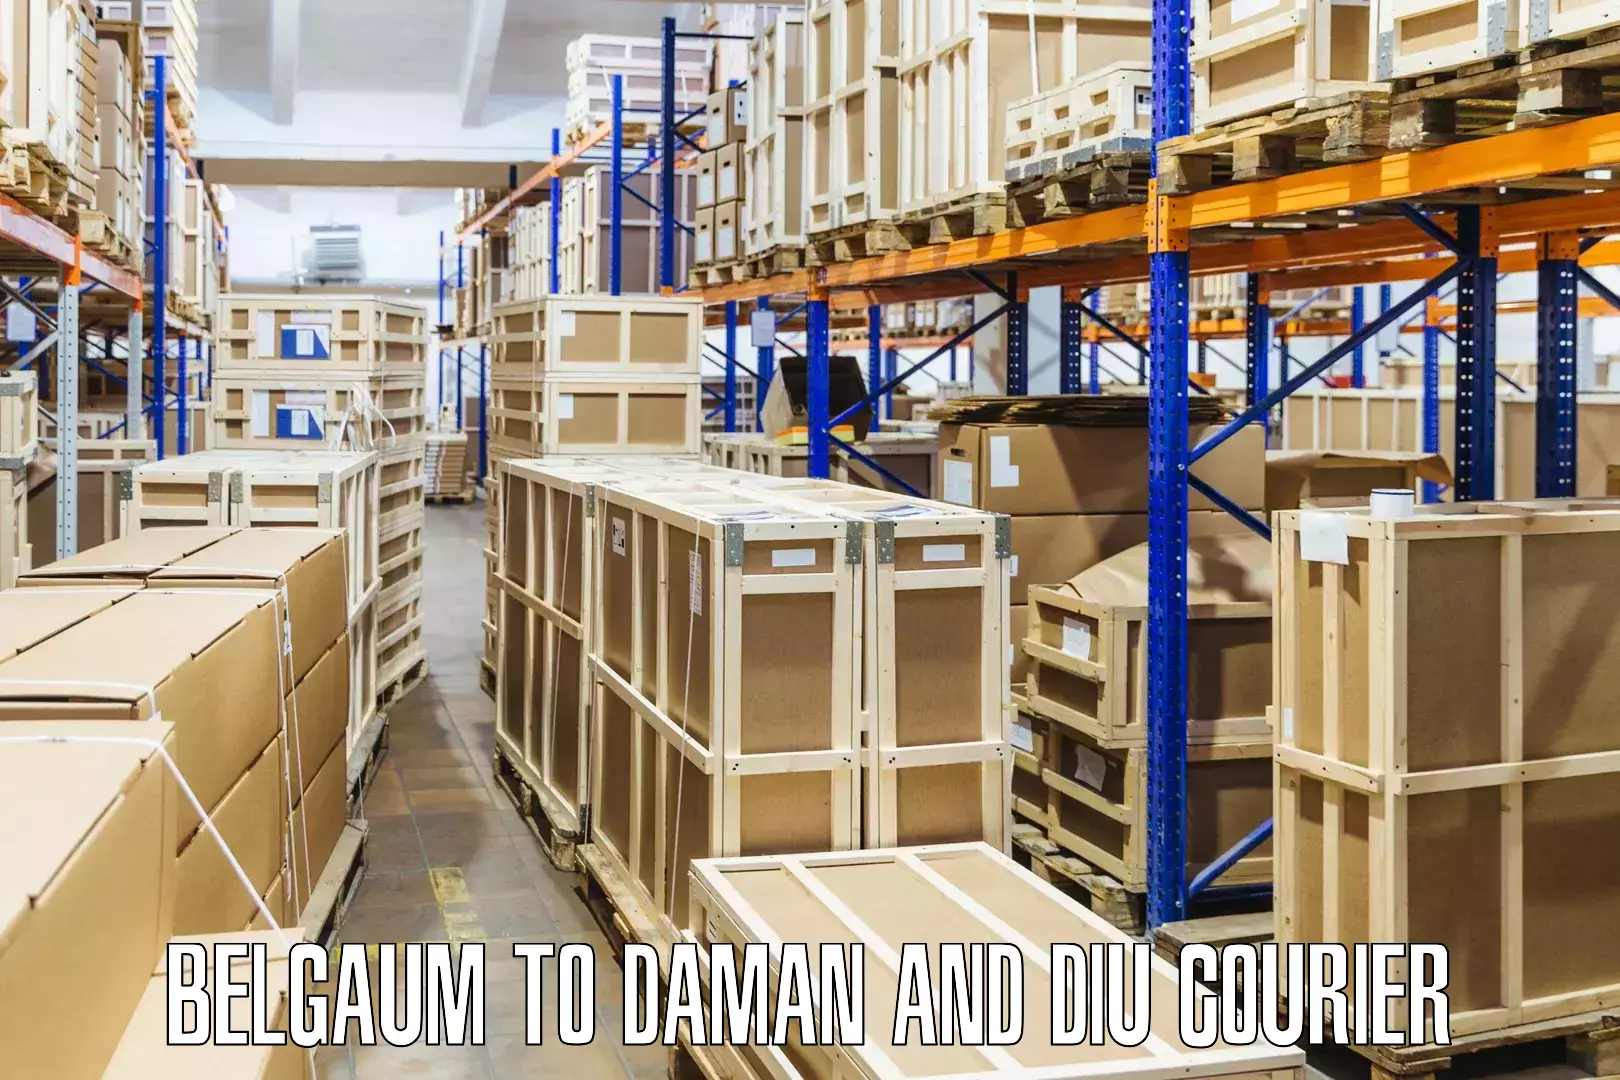 24/7 courier service Belgaum to Daman and Diu